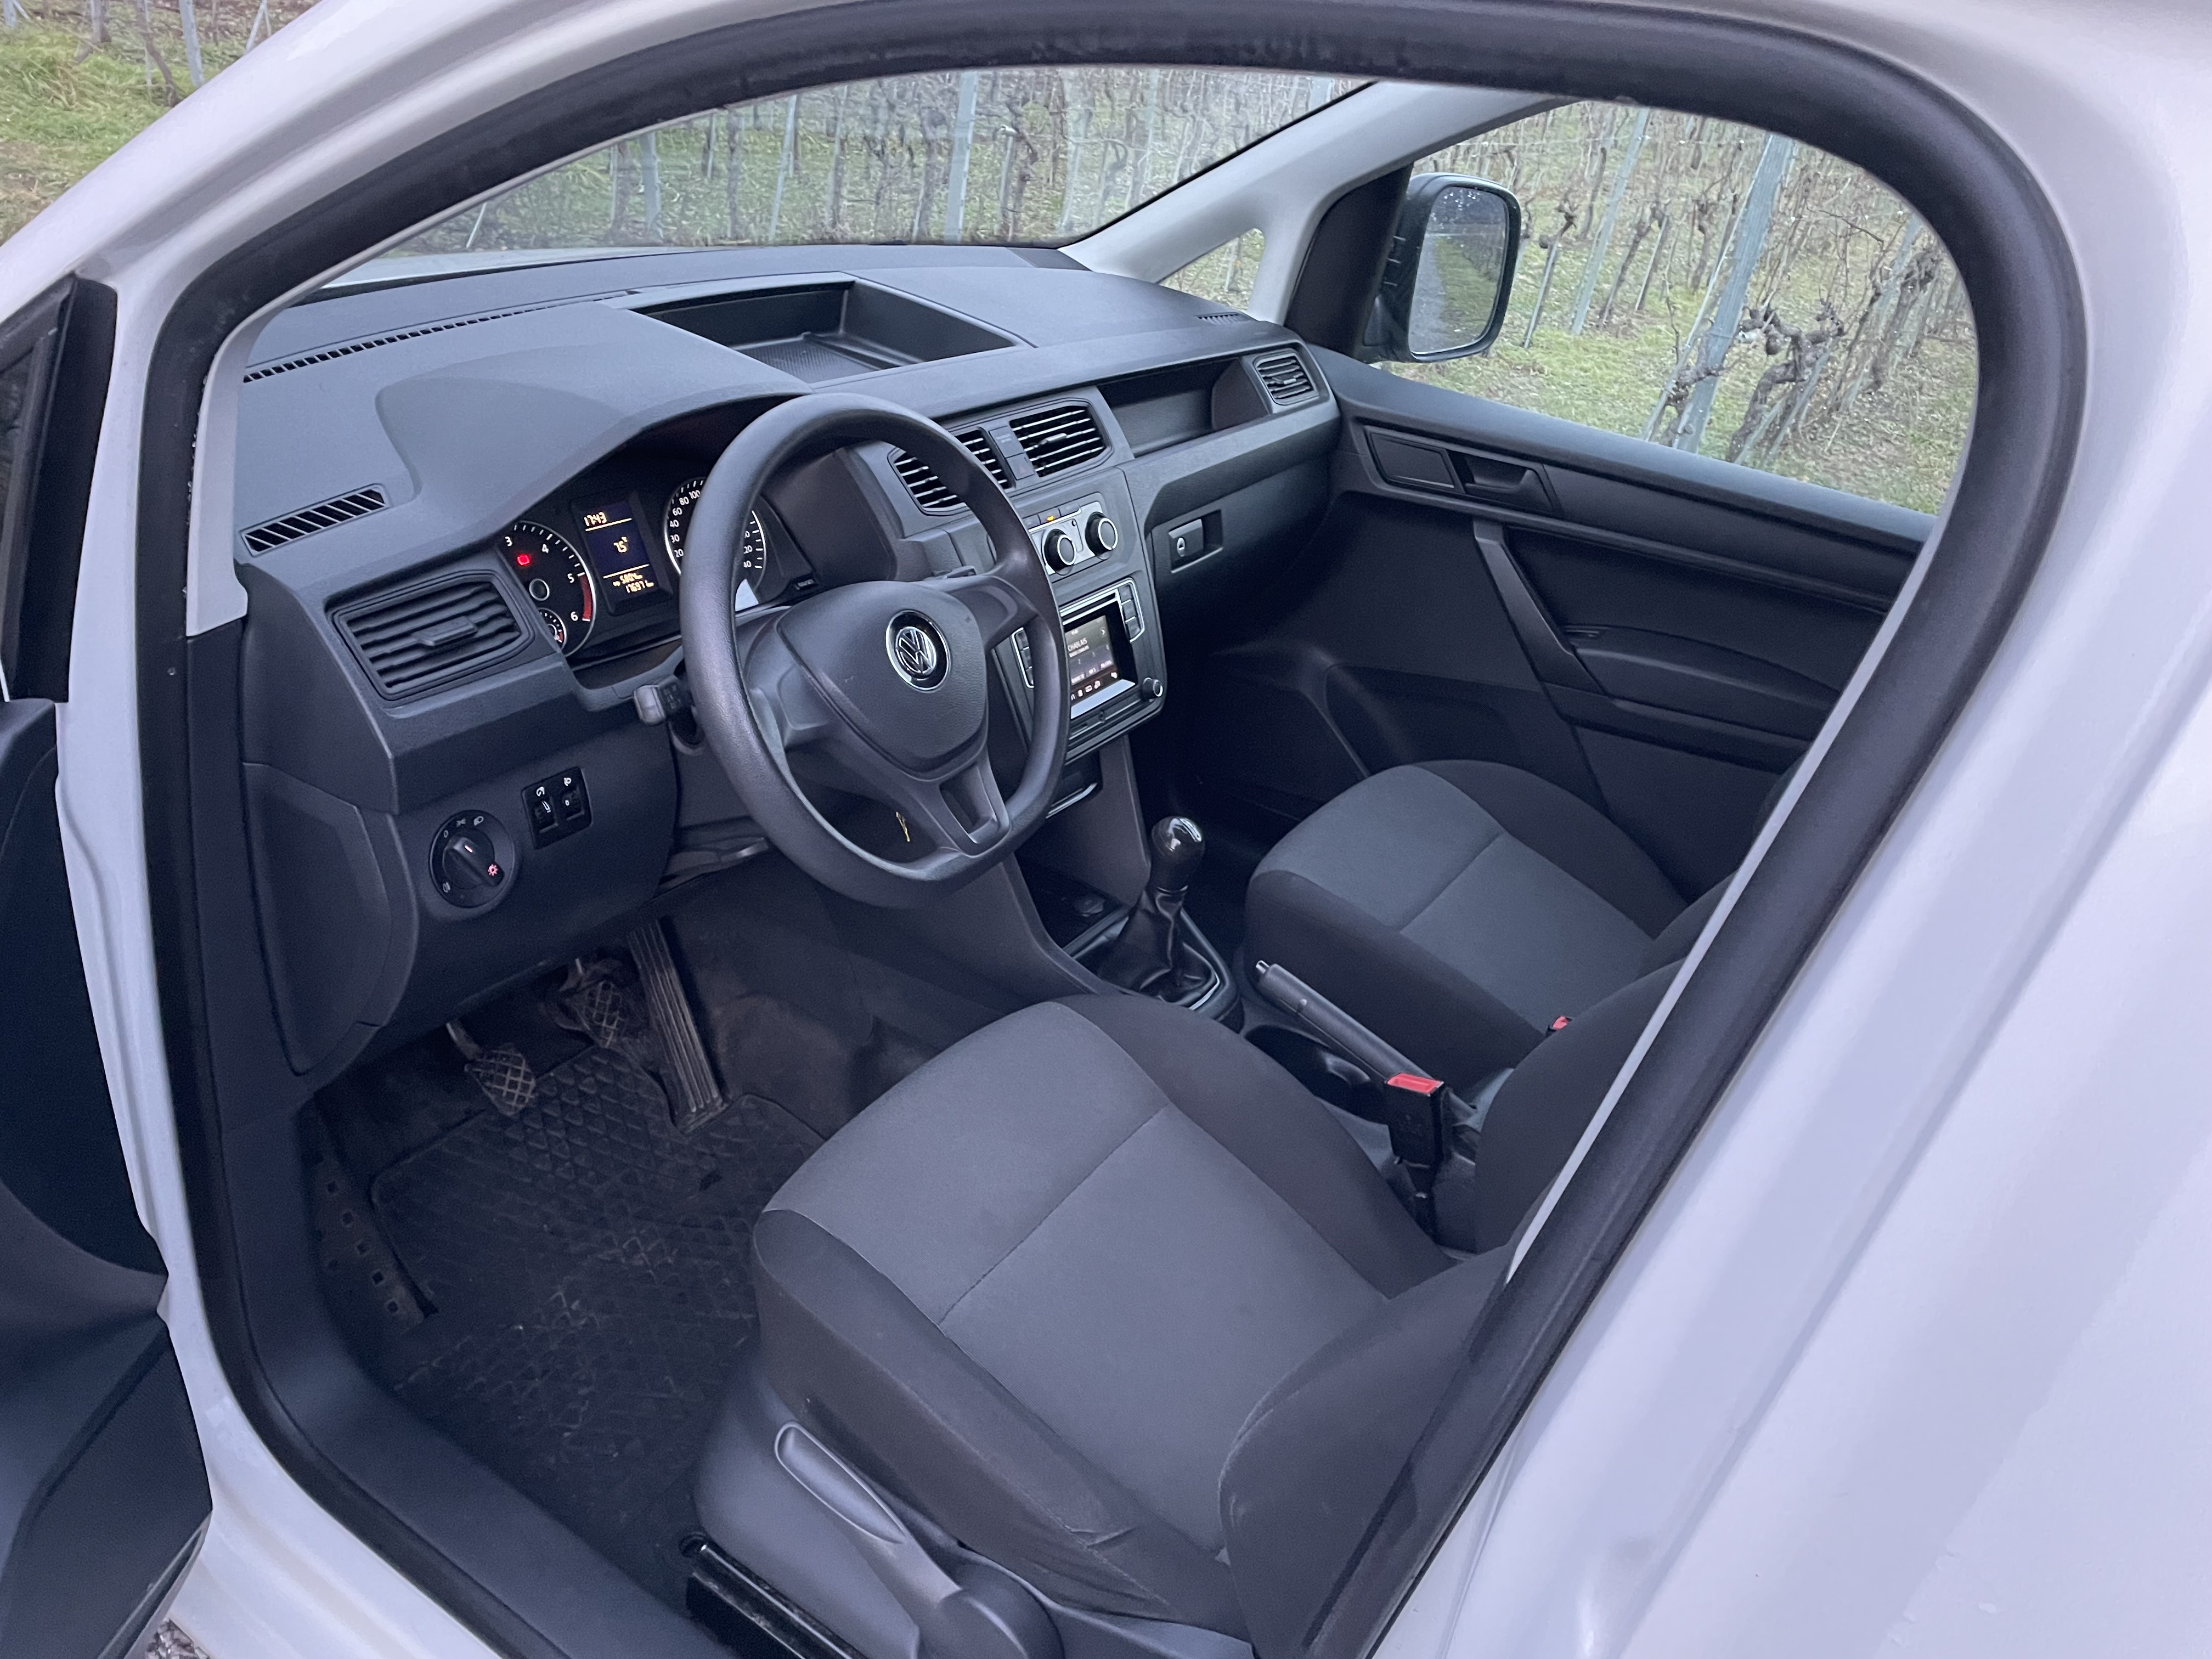 VW Caddy Maxi 1.6 TDI